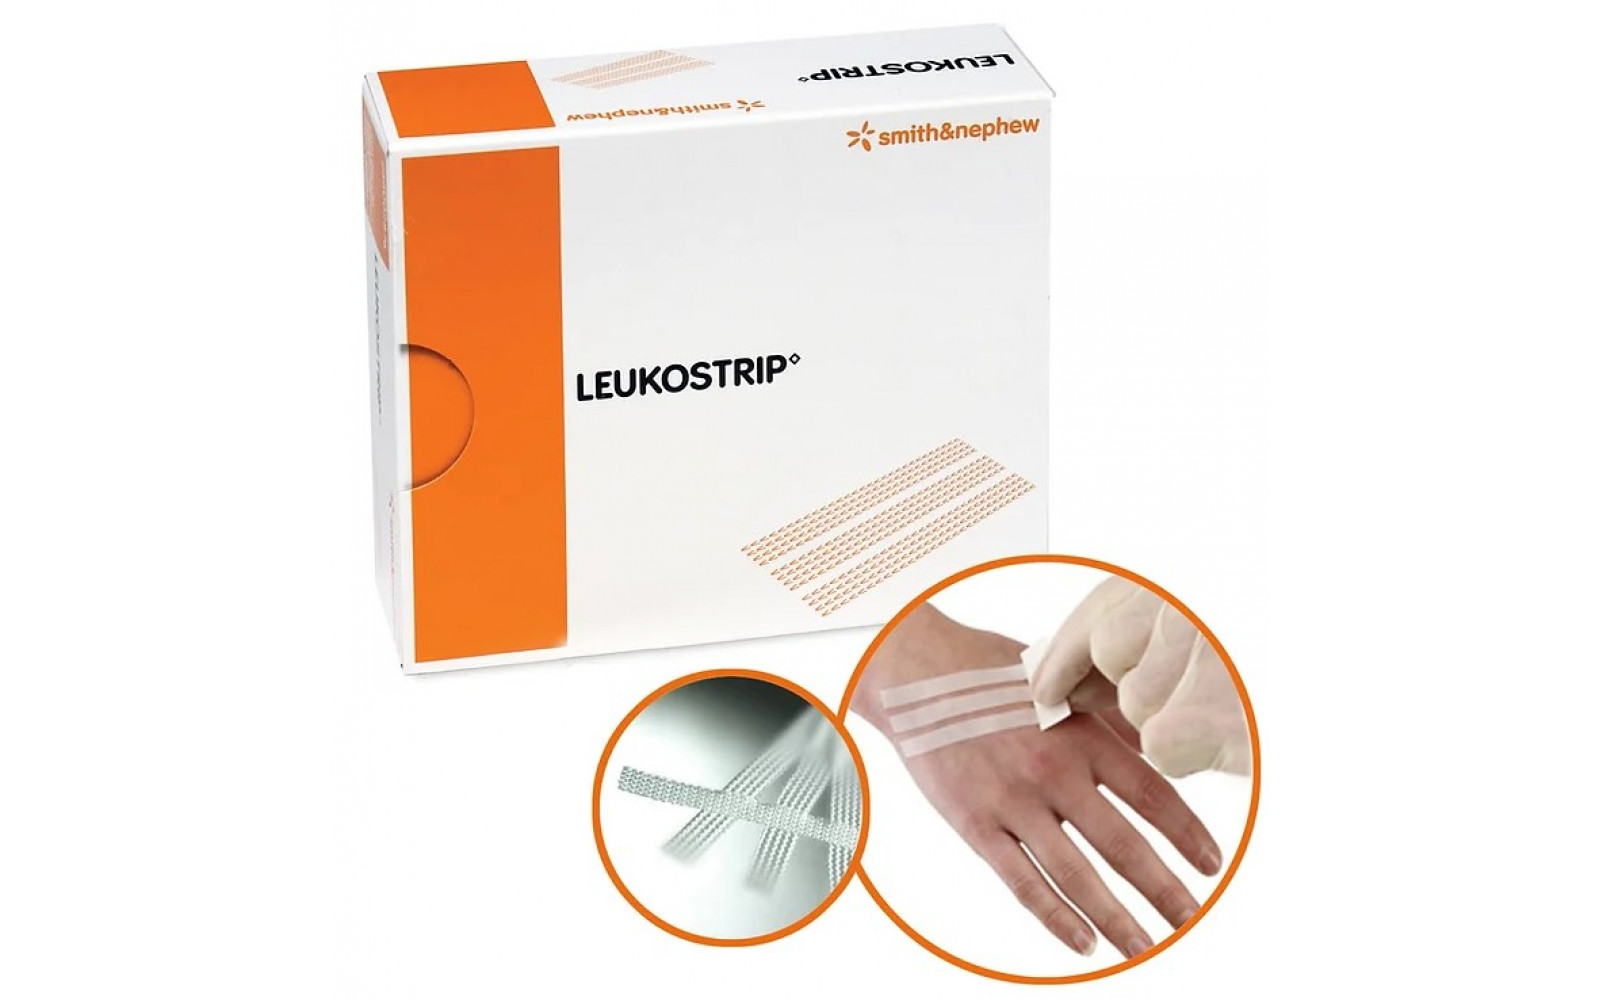 Adhesive hypoallergenic wound closure strips LEUKOSTRIP™ (Smith+Nephew)